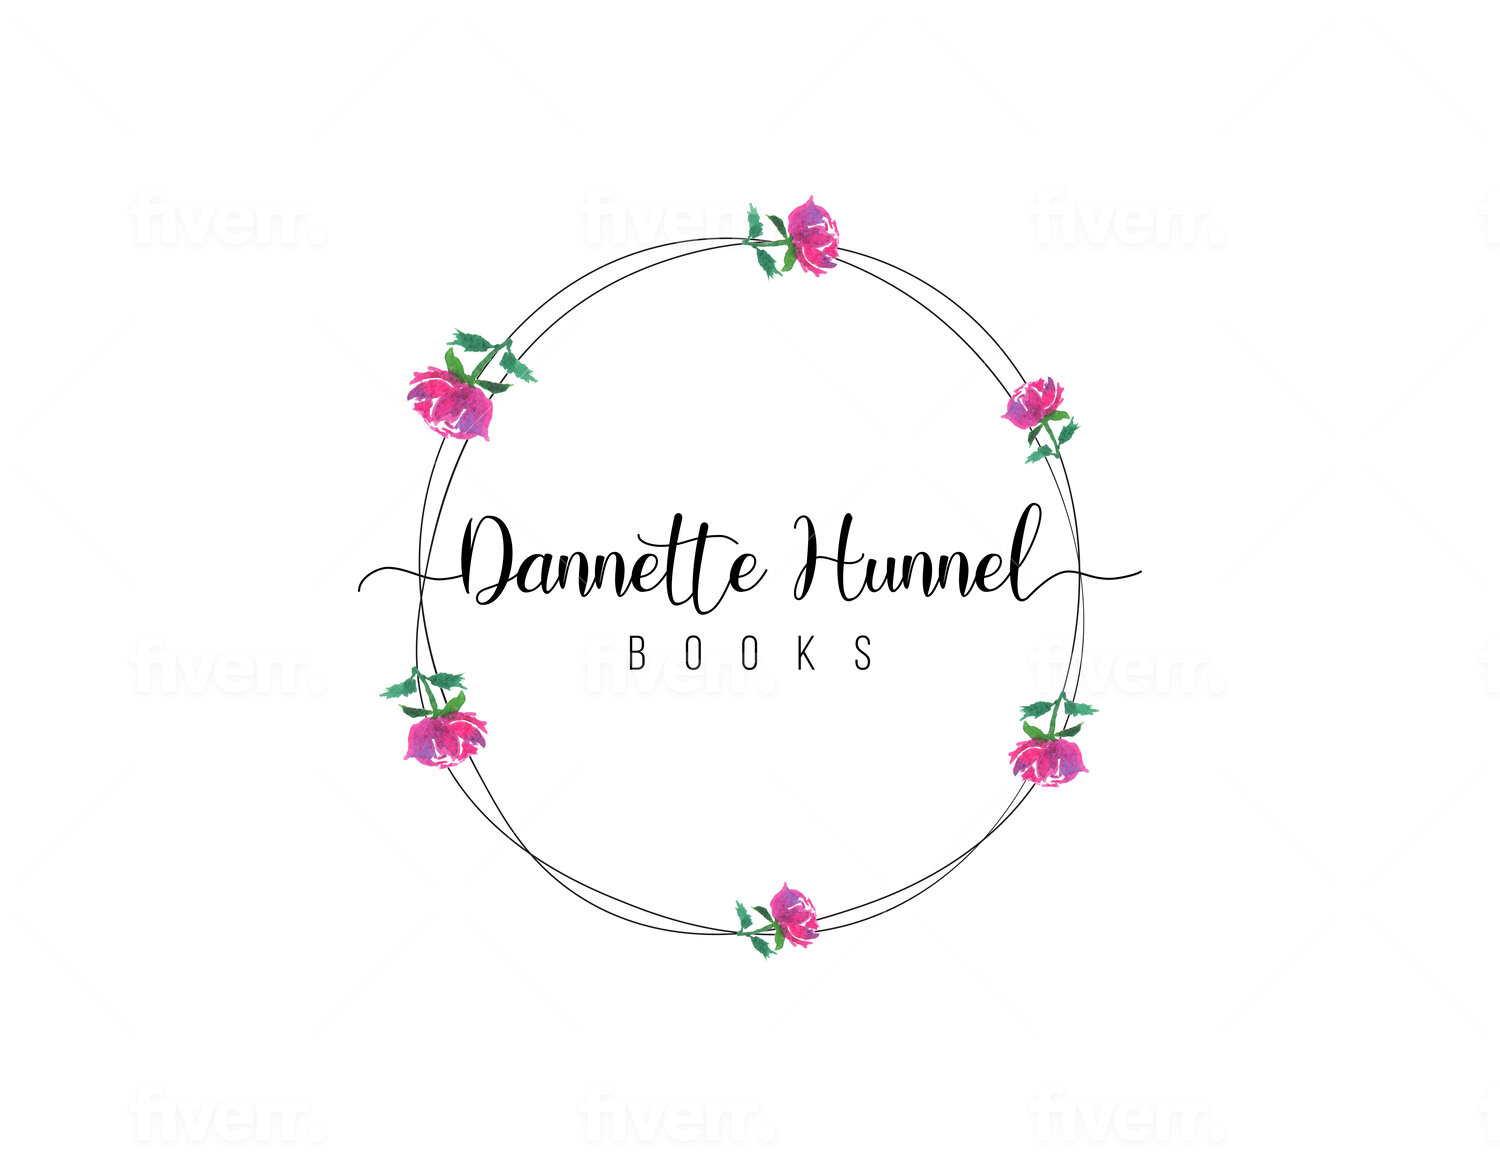 Dannette Hunnel Books